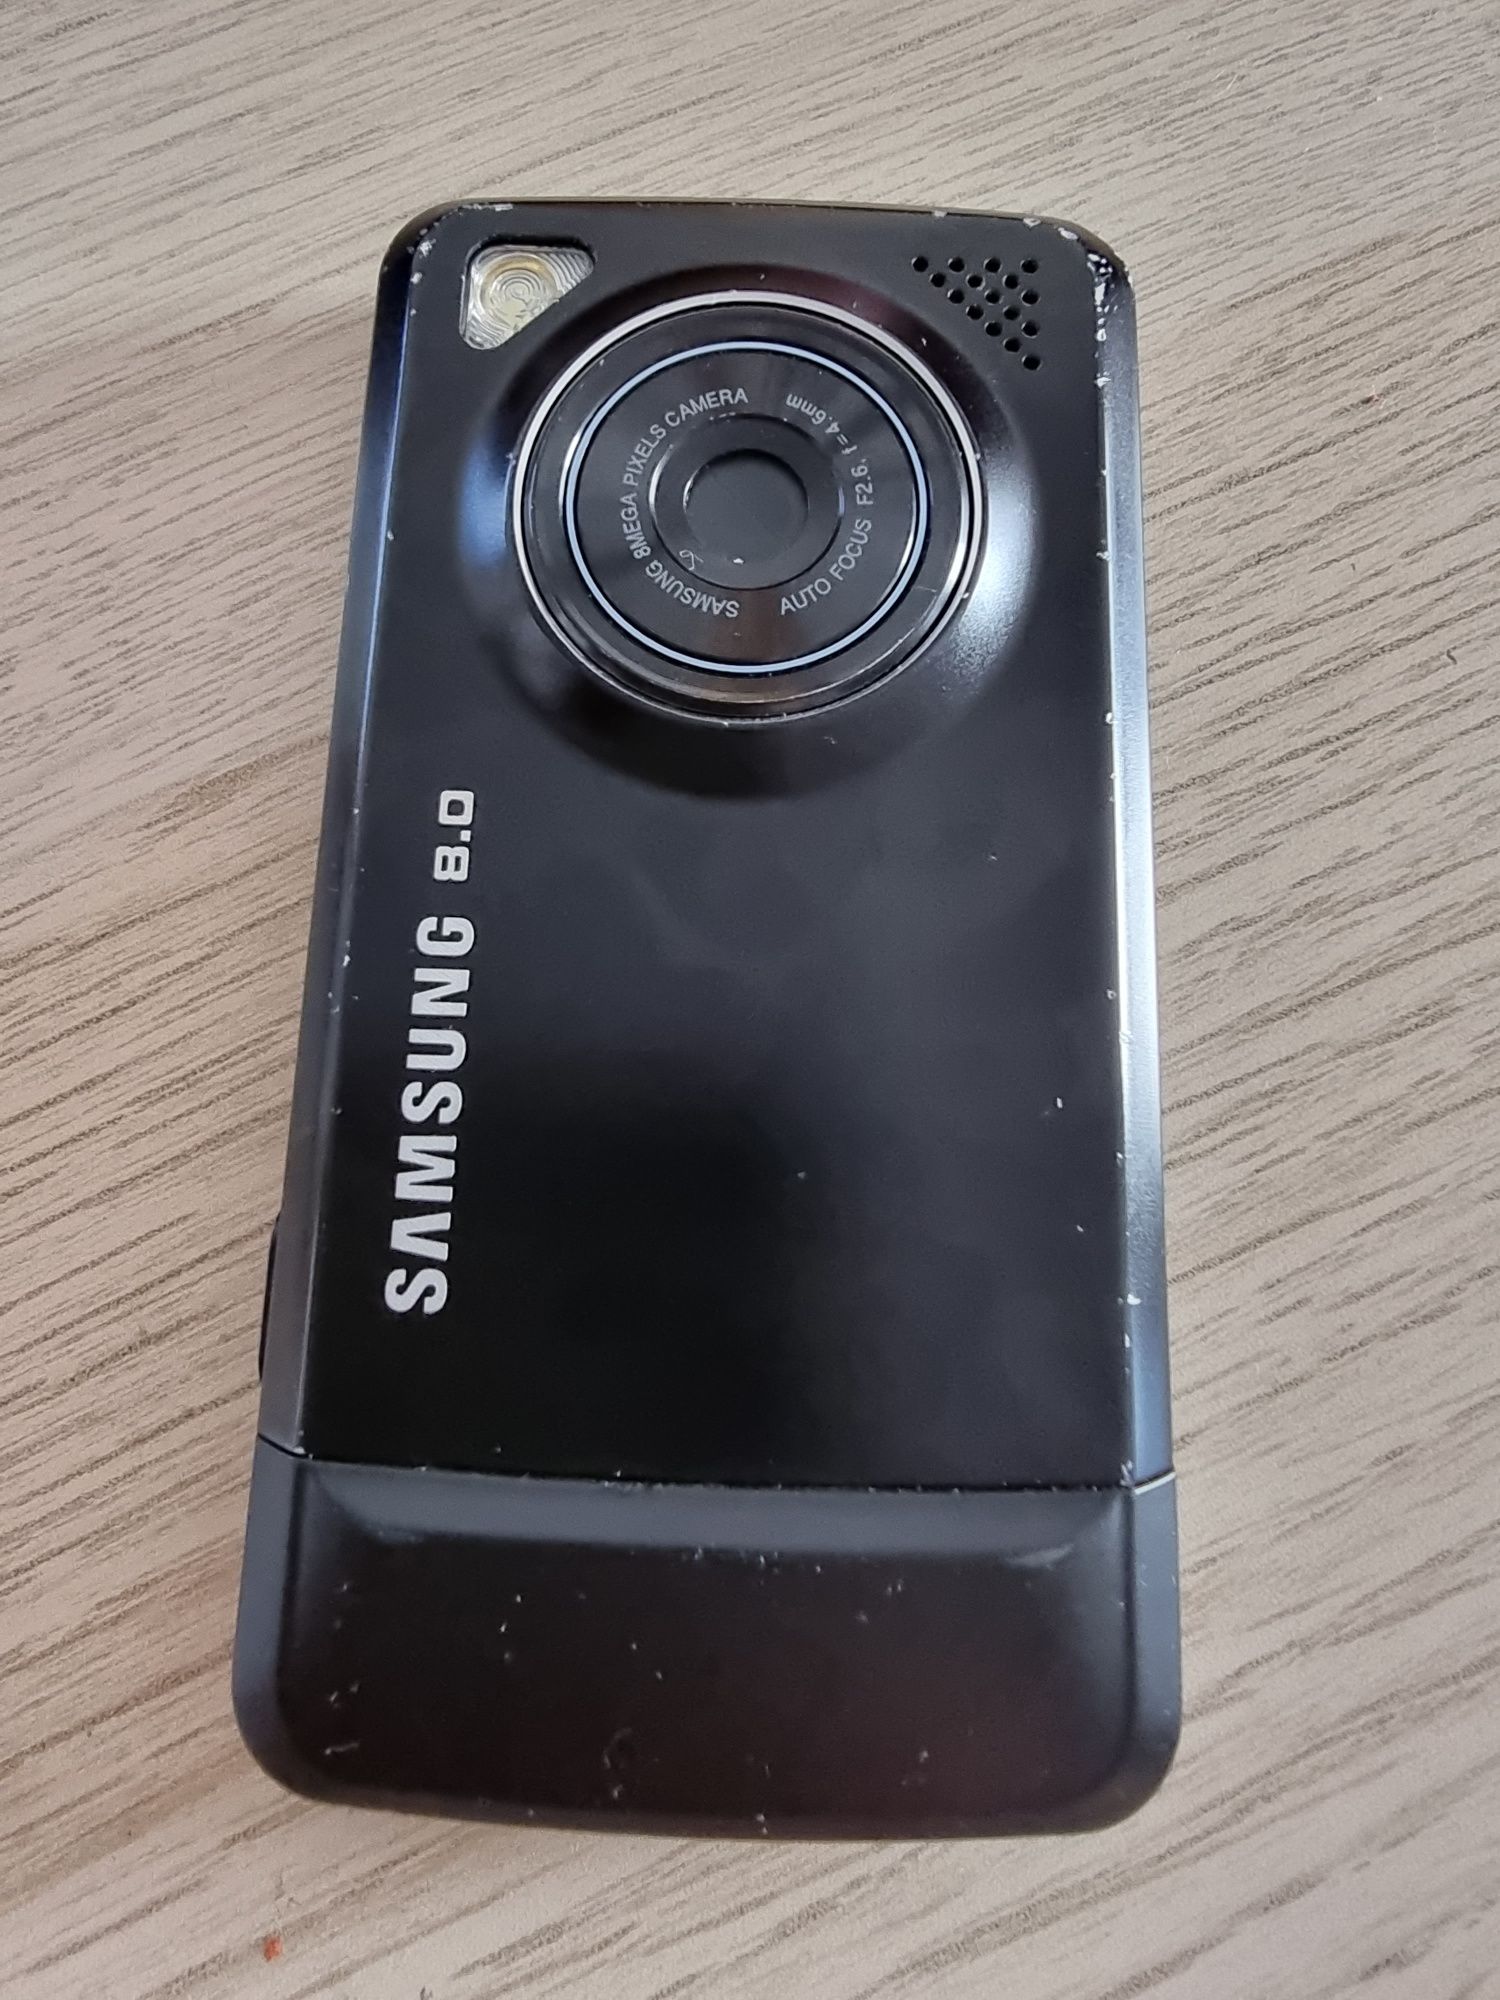 Samsung M8800 desbloqueado